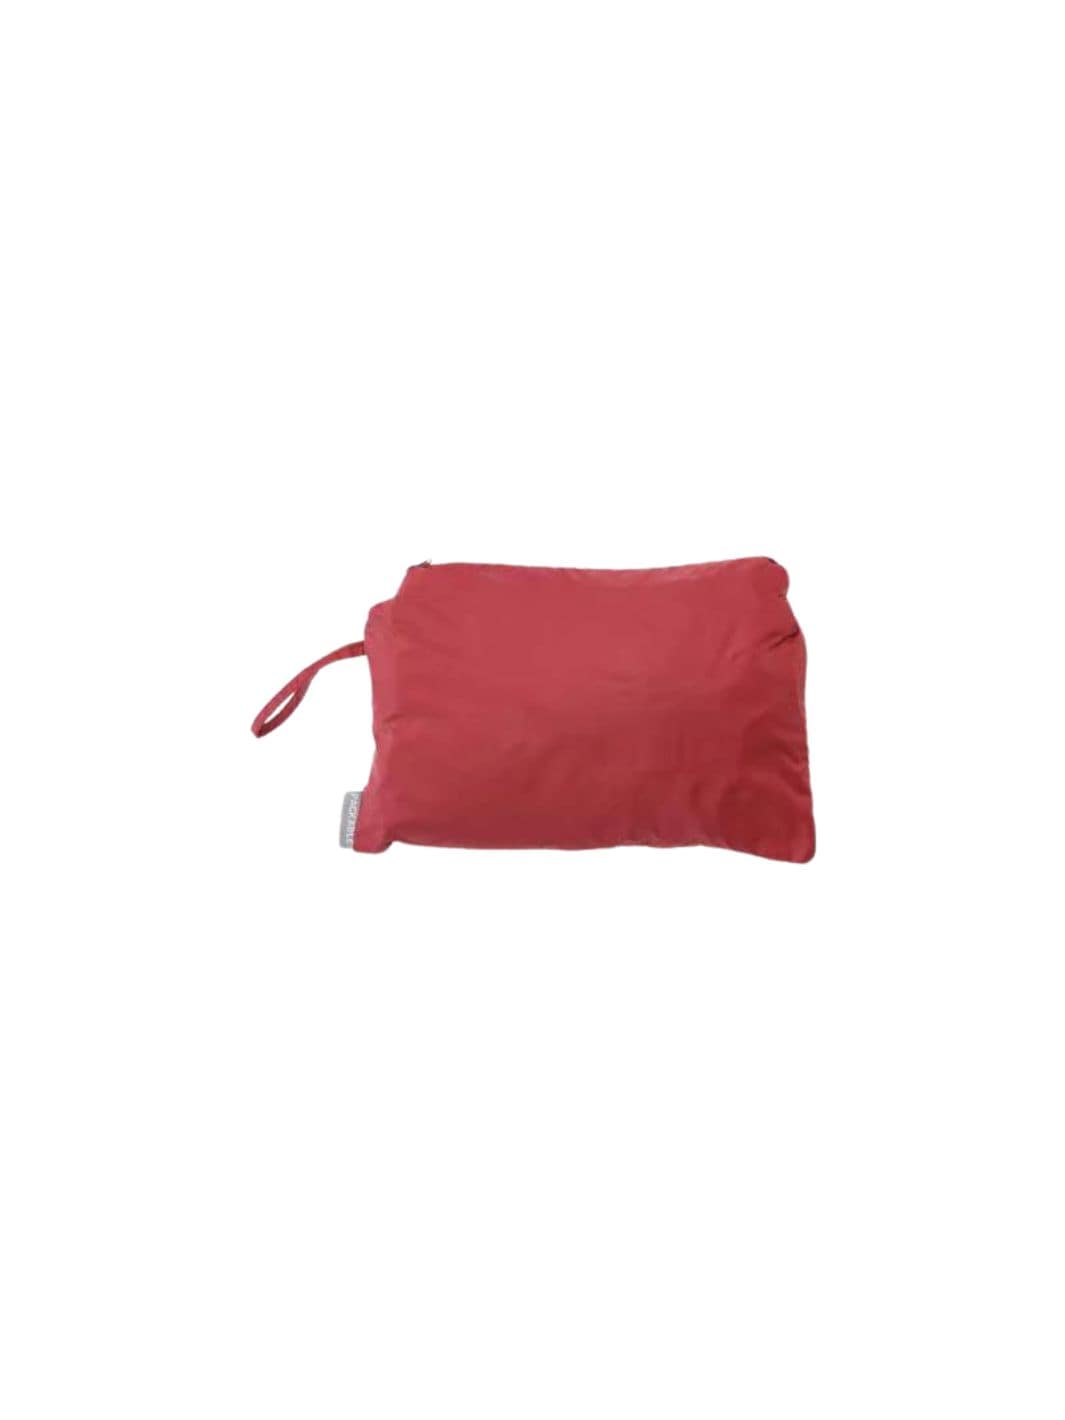 Gramicci Outerwear Jakke | Packable Windbreaker Red